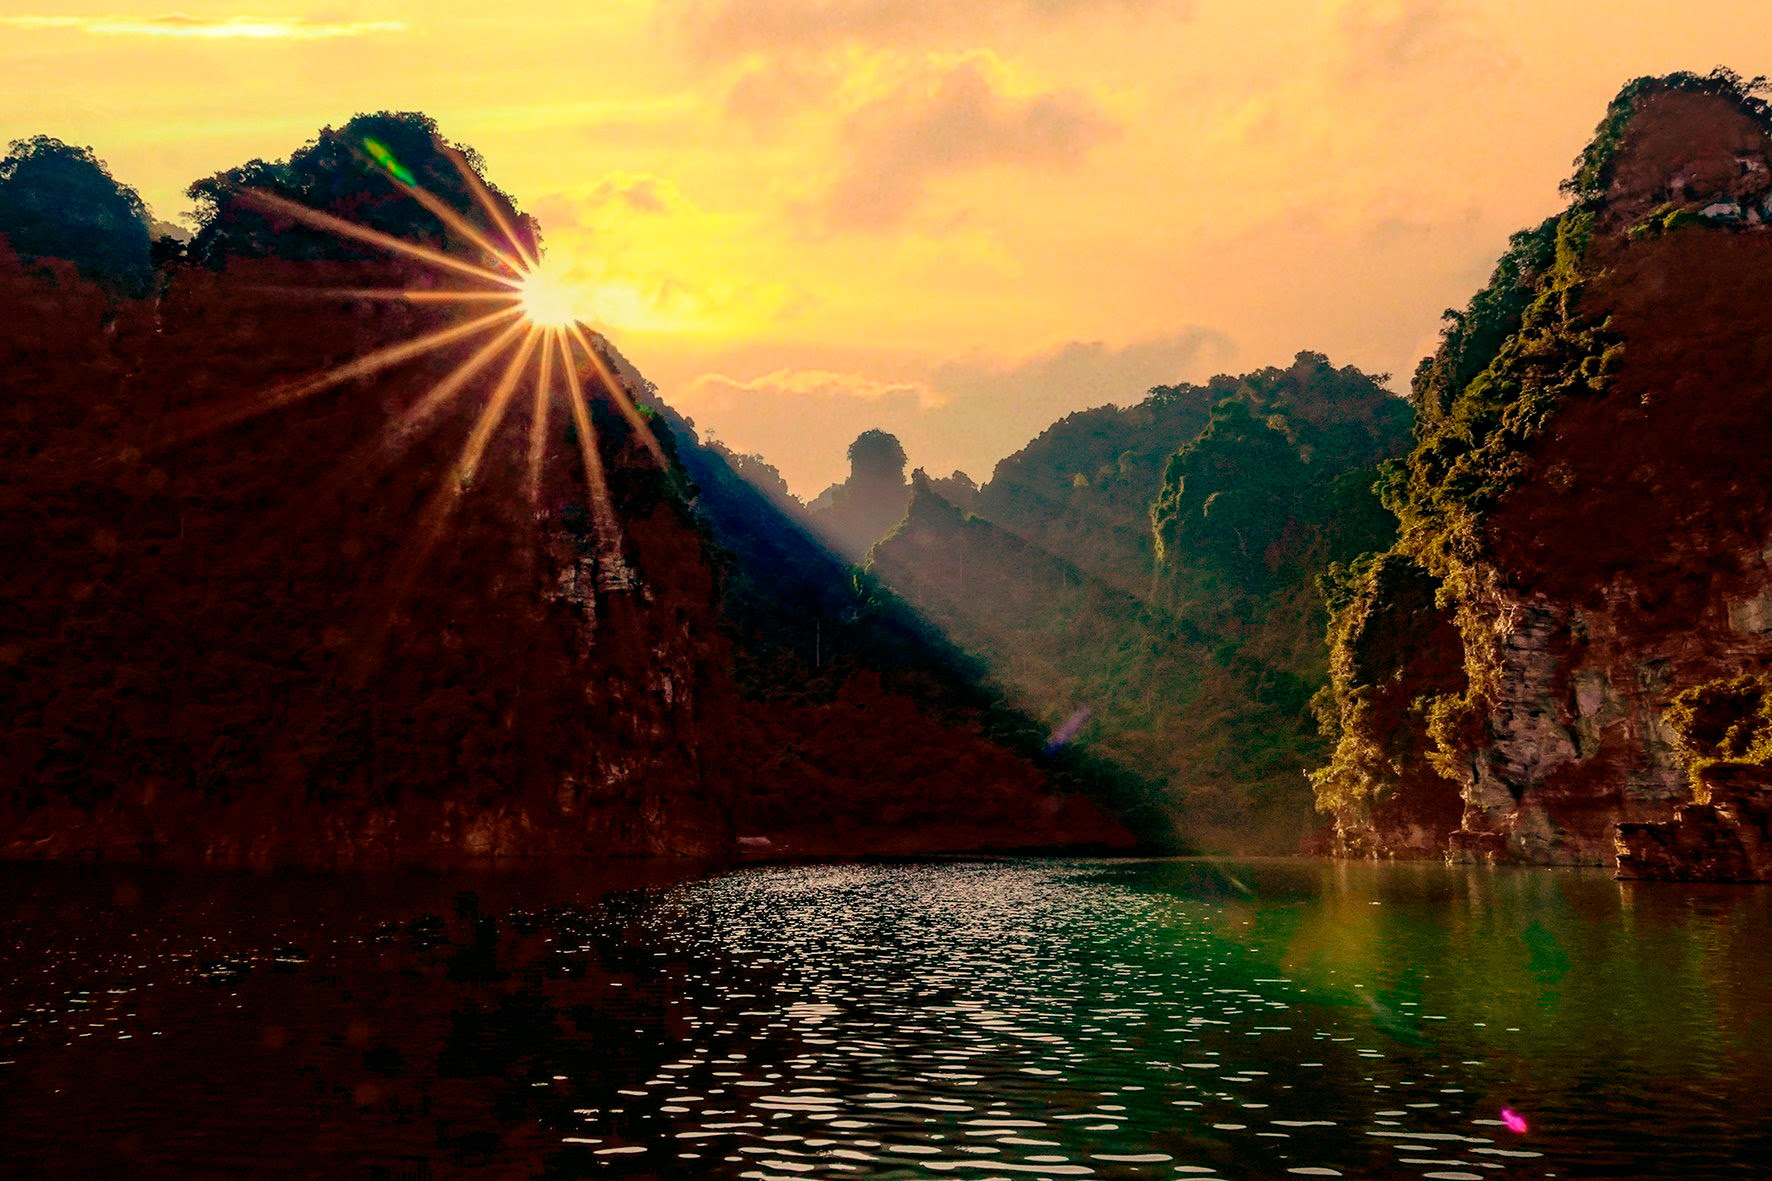 Hồ nước ngọt nhân tạo lớn nhất Tuyên Quang hiện ra đẹp như phim, có ngọn thác đổ, rừng nguyên sinh - Ảnh 10.